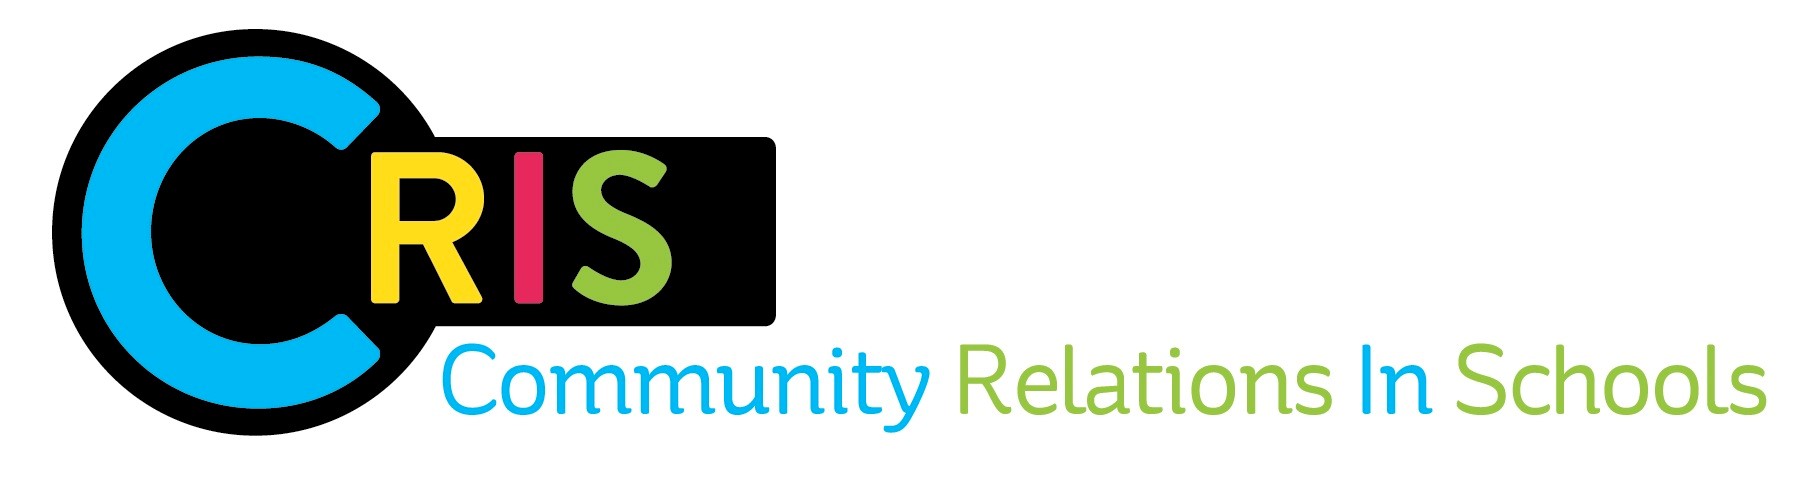 Community Relations in Schools